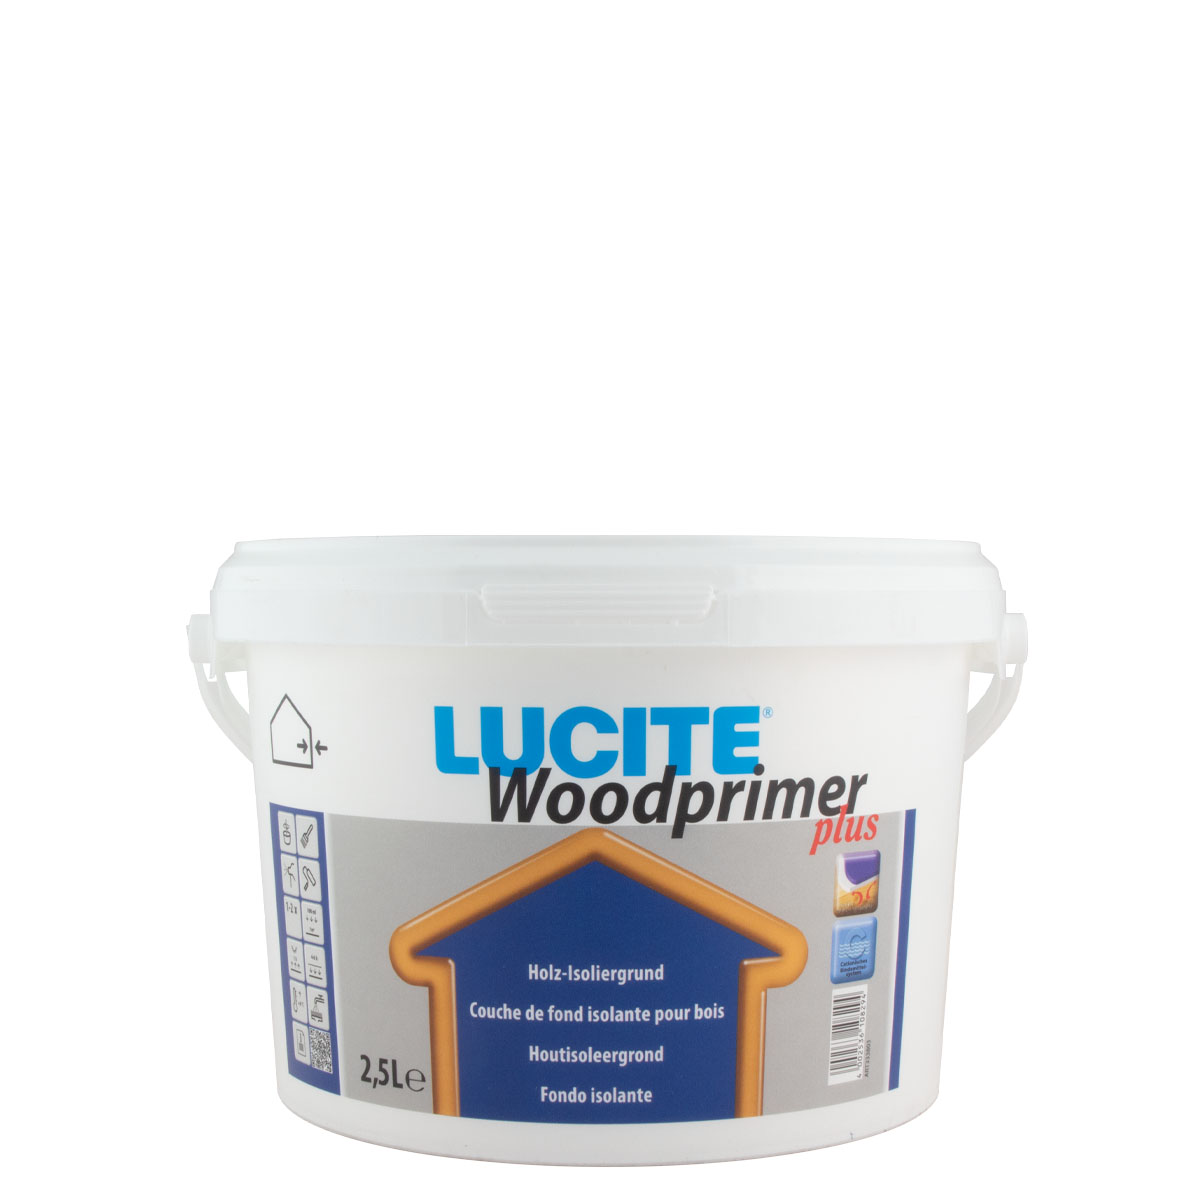 Lucite Woodprimer plus 2,5L, Holz Isoliergrund weiss